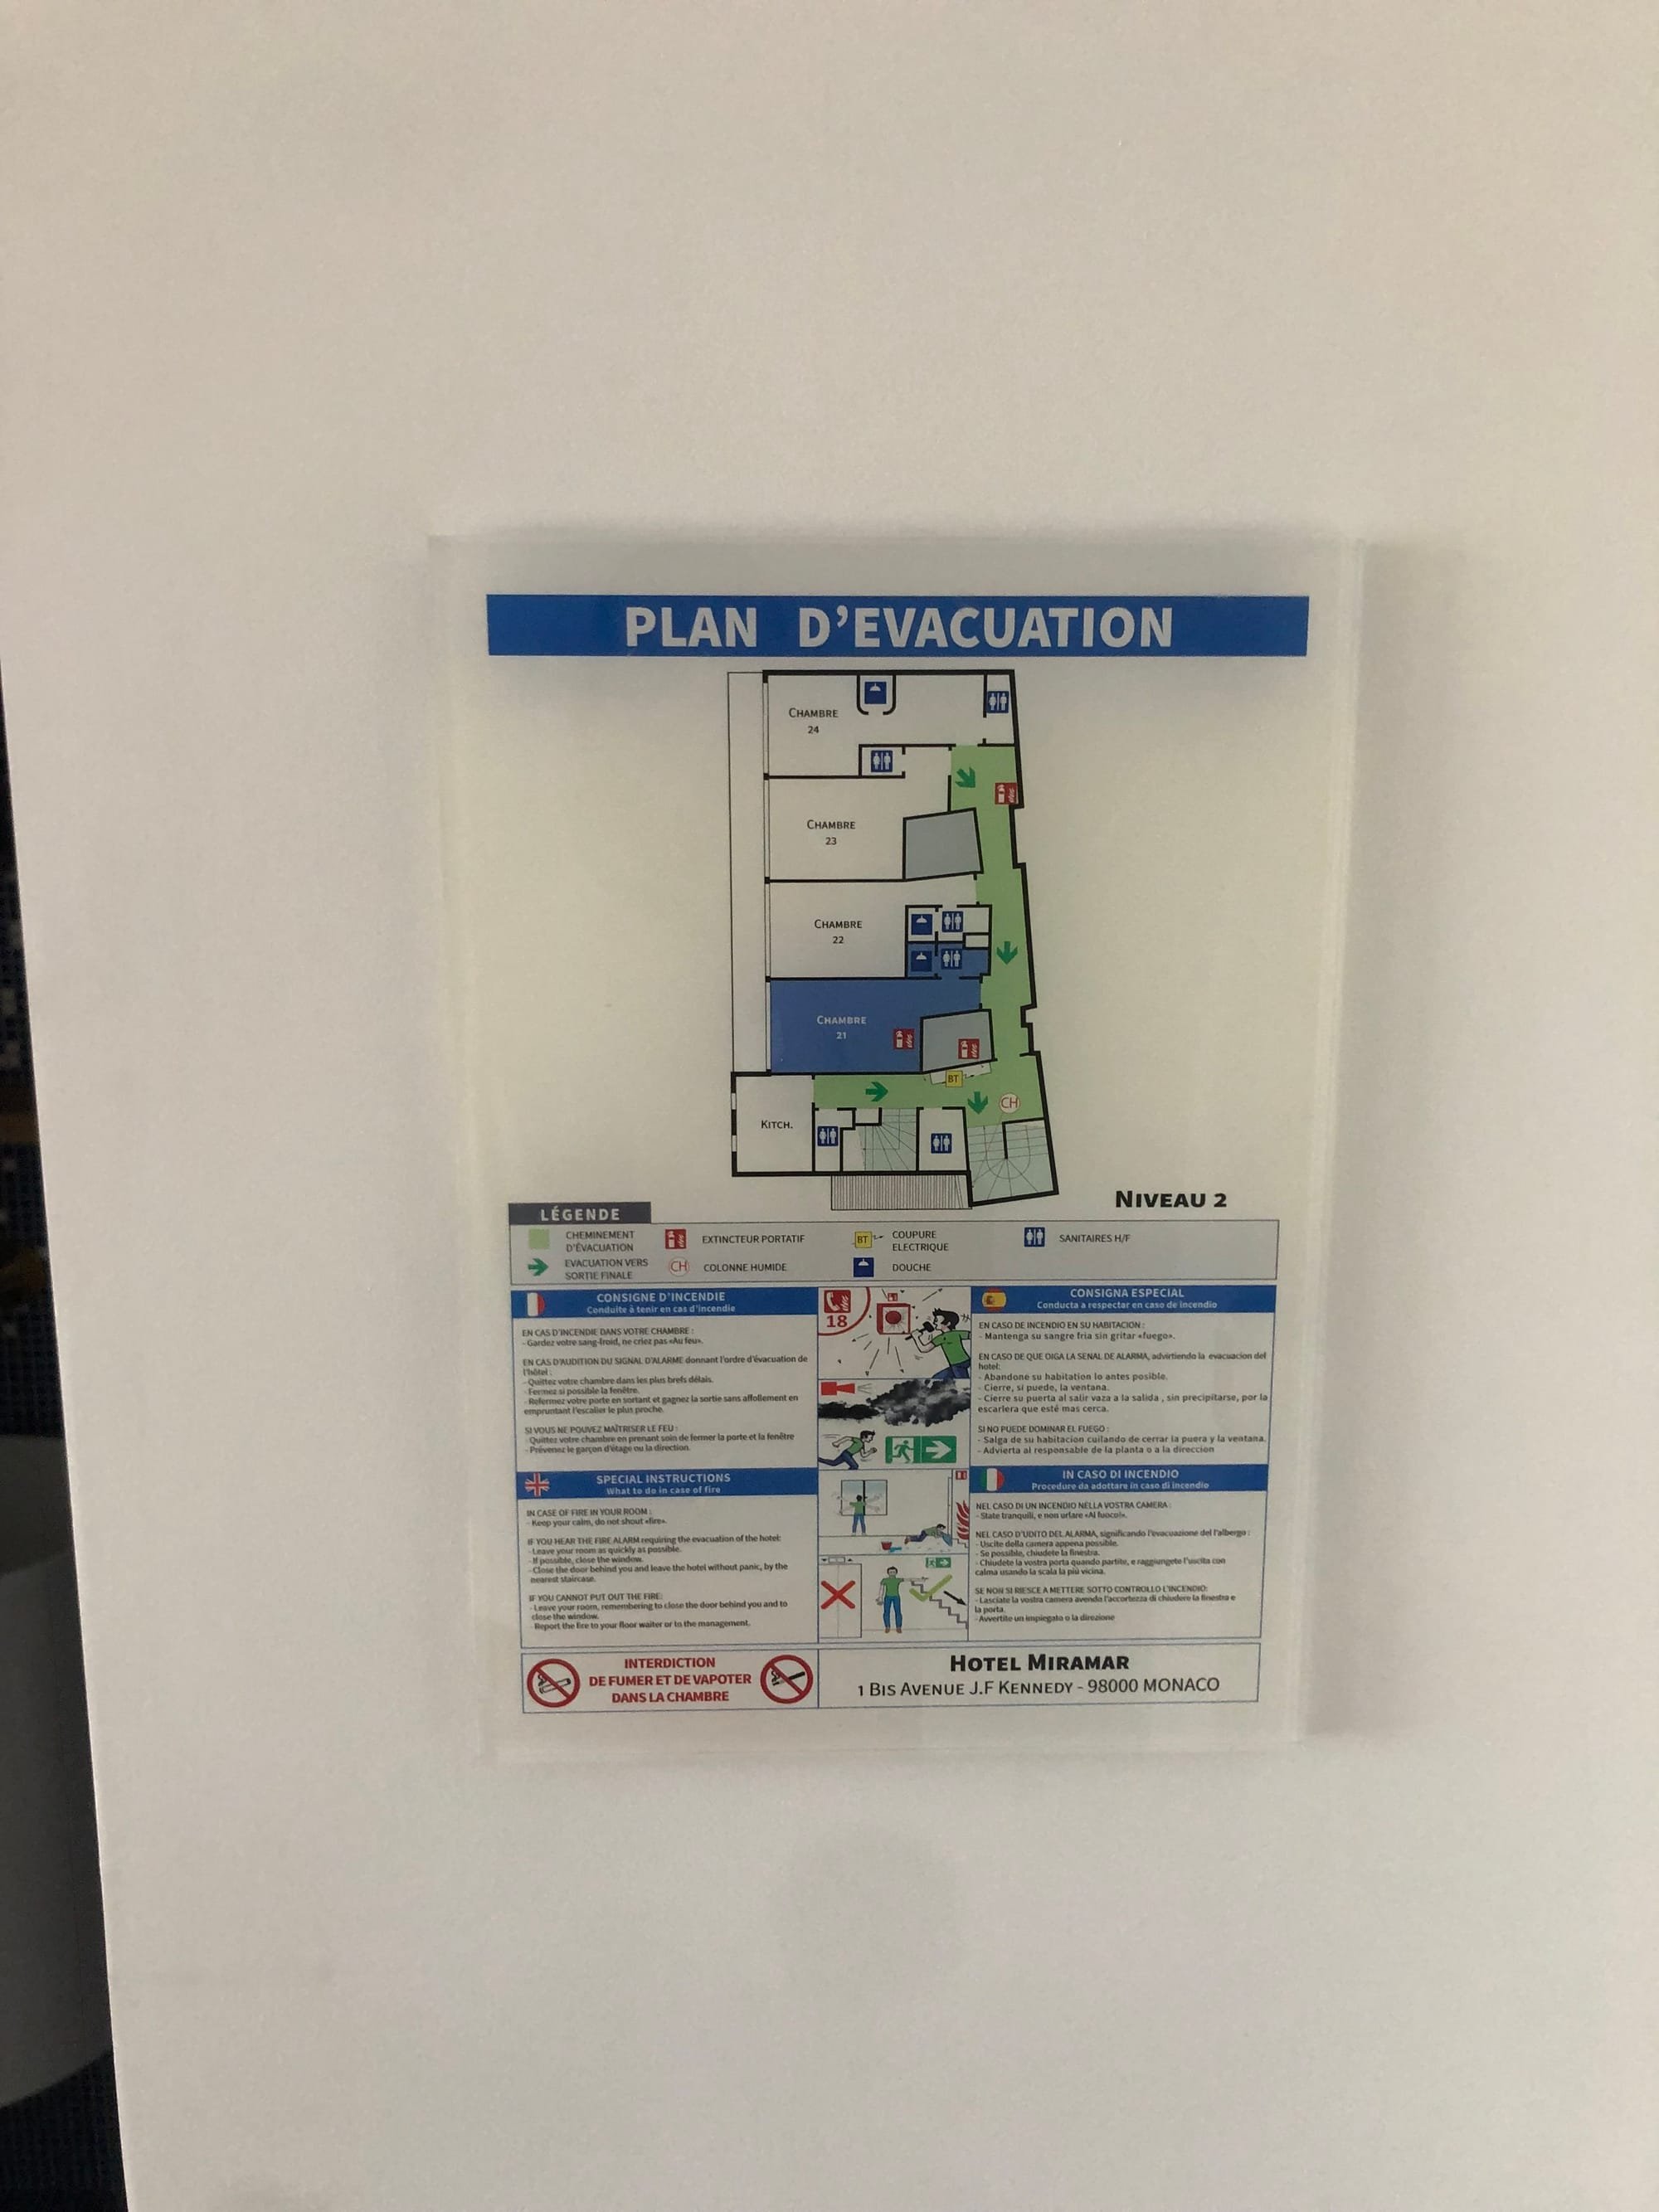 PLAN DE CHAMBRE ALTUGLASS/PLEXI ( Noté plan d'évacuation a la demande de la commission de sécurité)